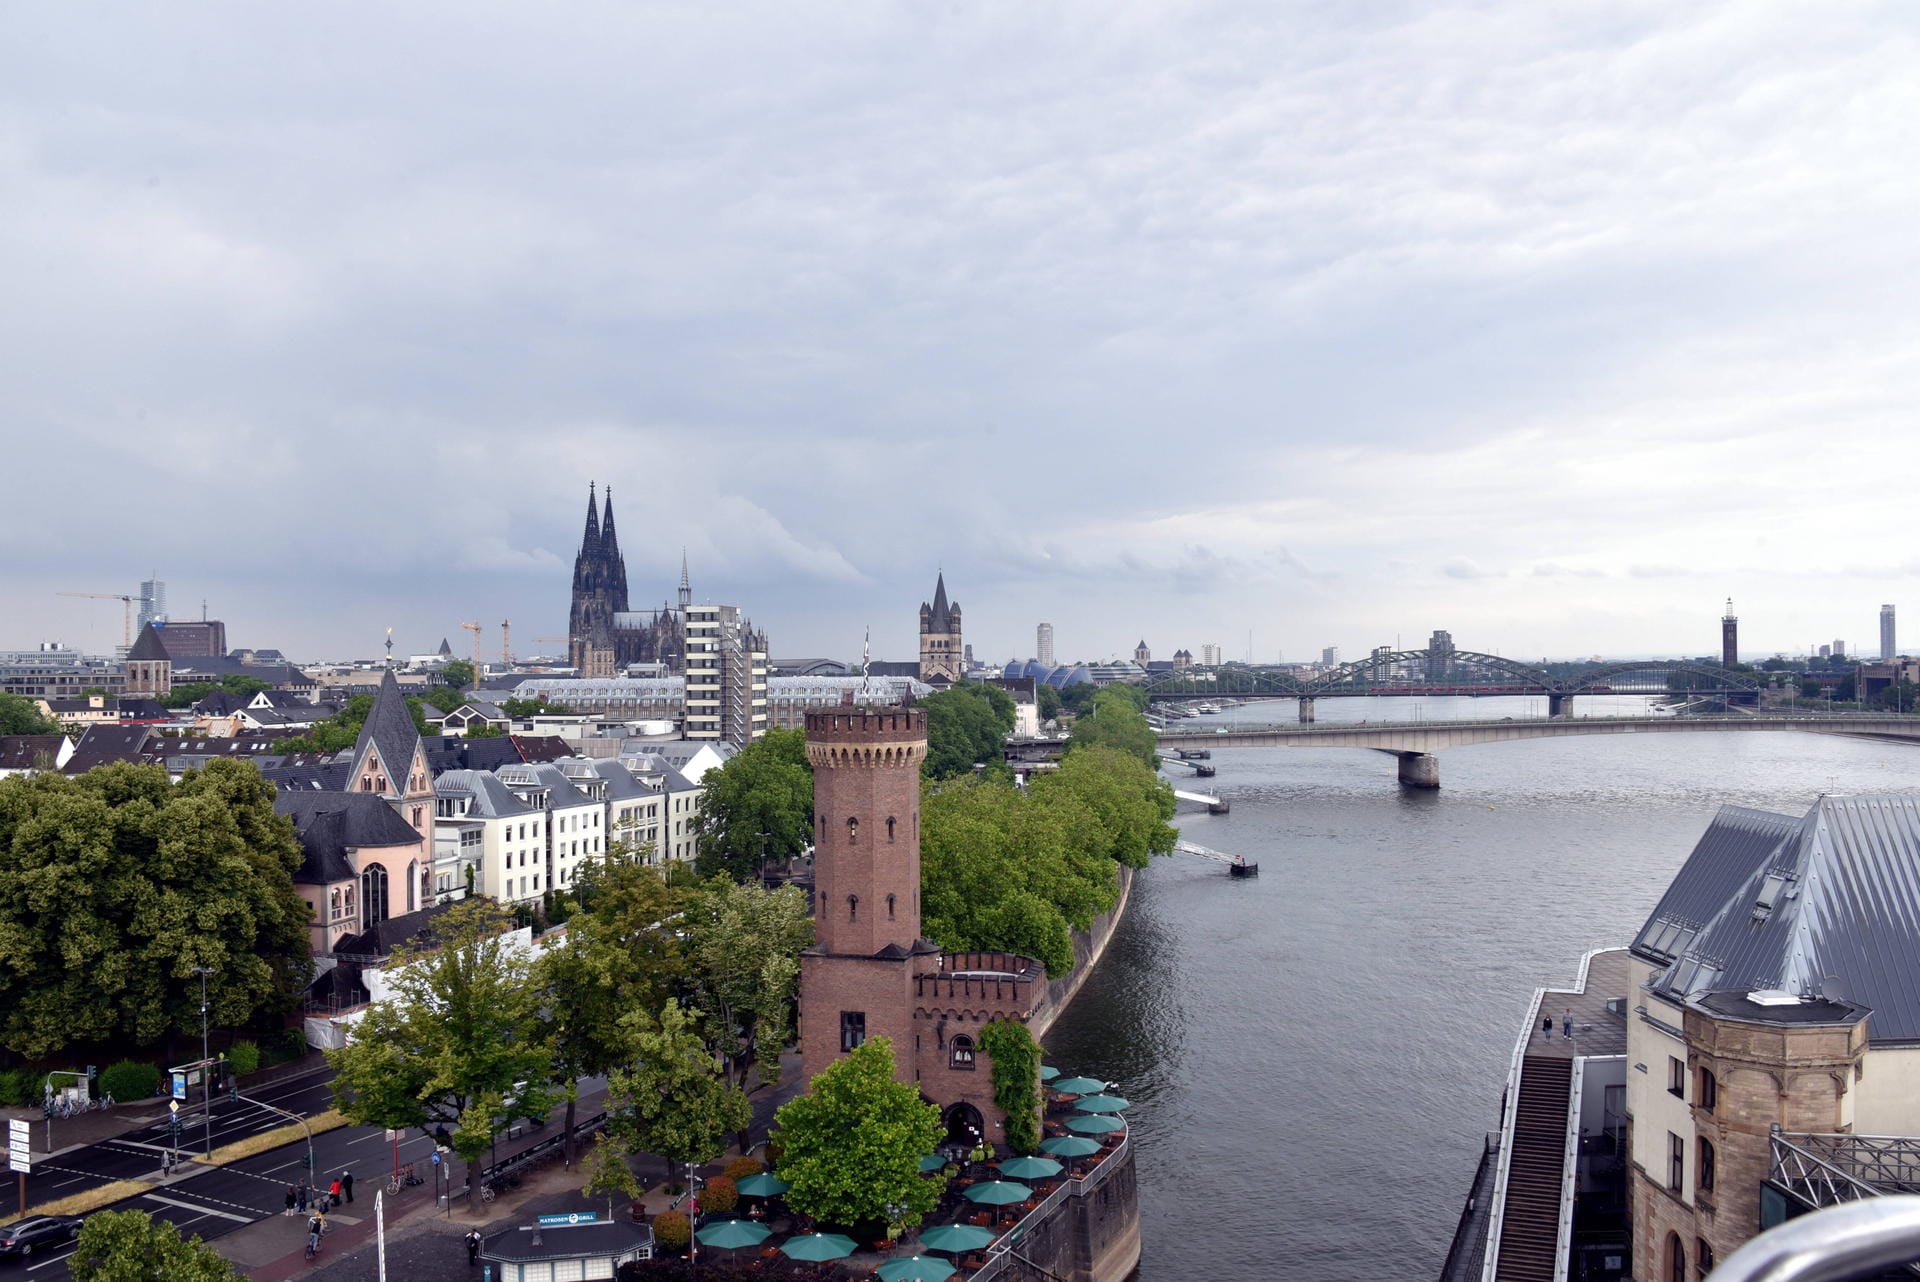 Blick auf den Rheinauhafen mit Malakoffturm, Altstadt und Kölner Dom: Der Rhein ist für das Stadtbild prägend.